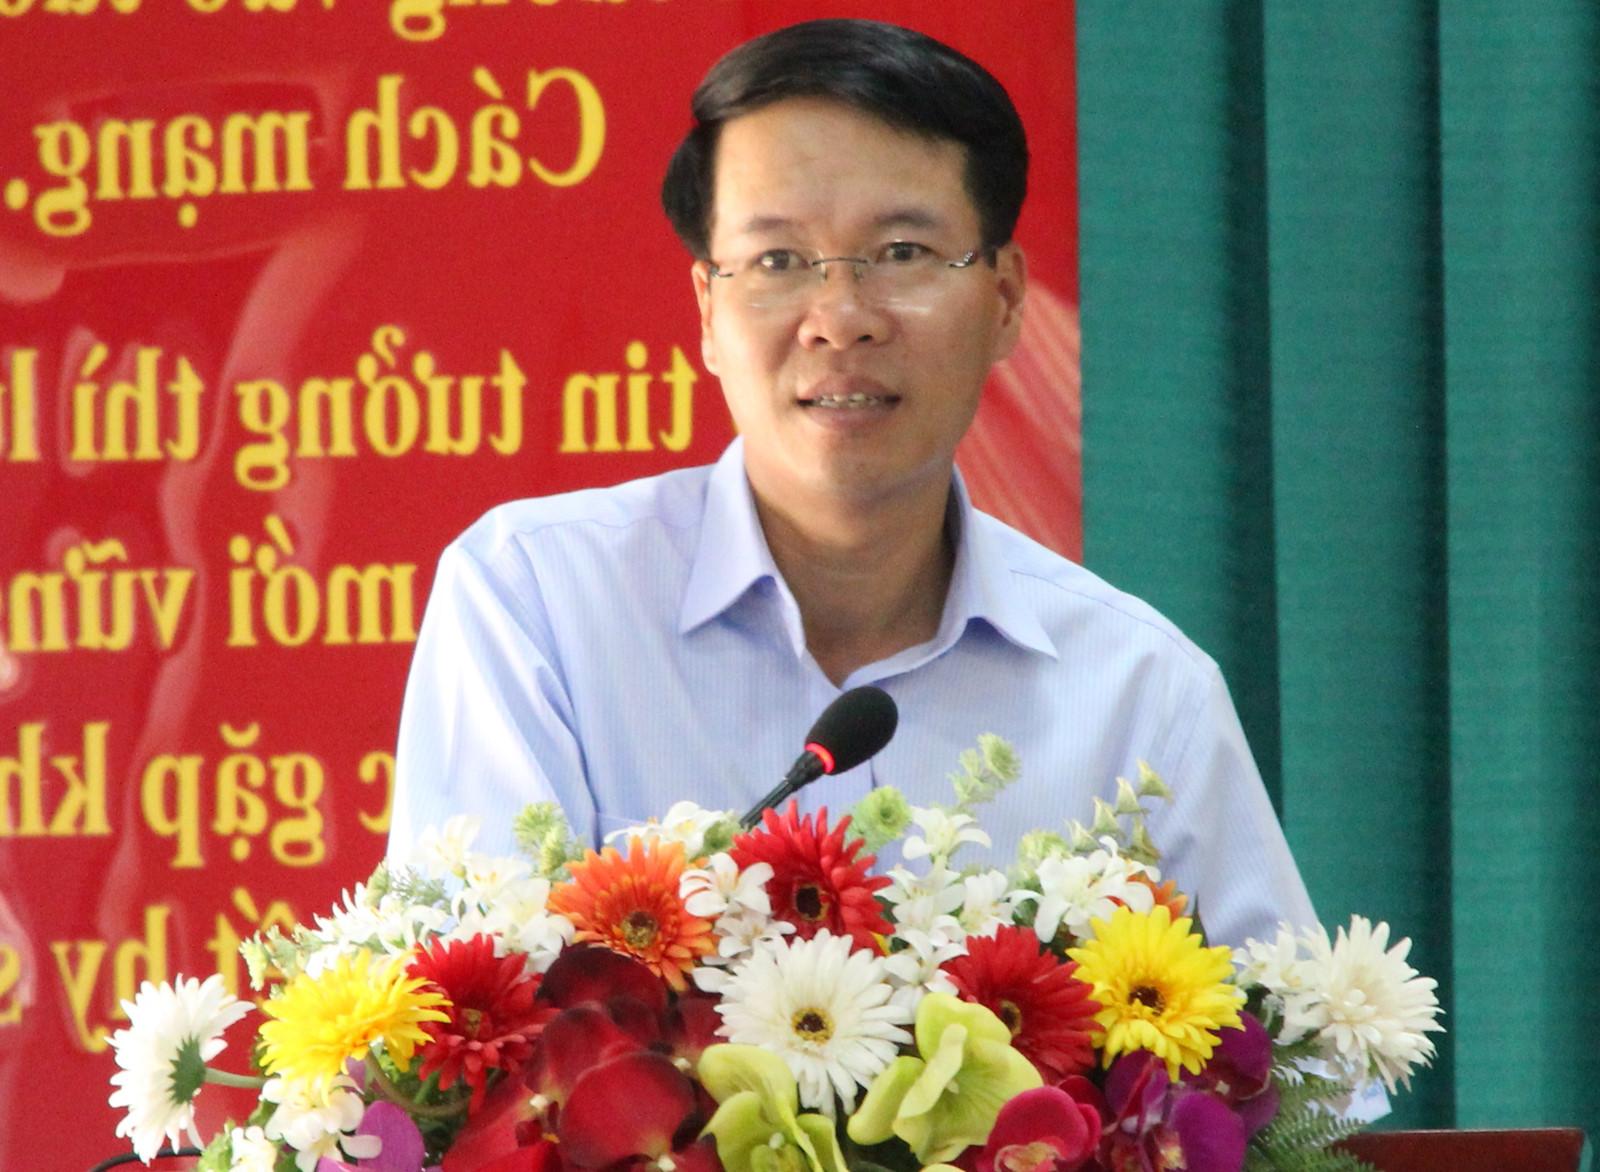 Vo Van Thuong - Vietnam's youngest Politburo member